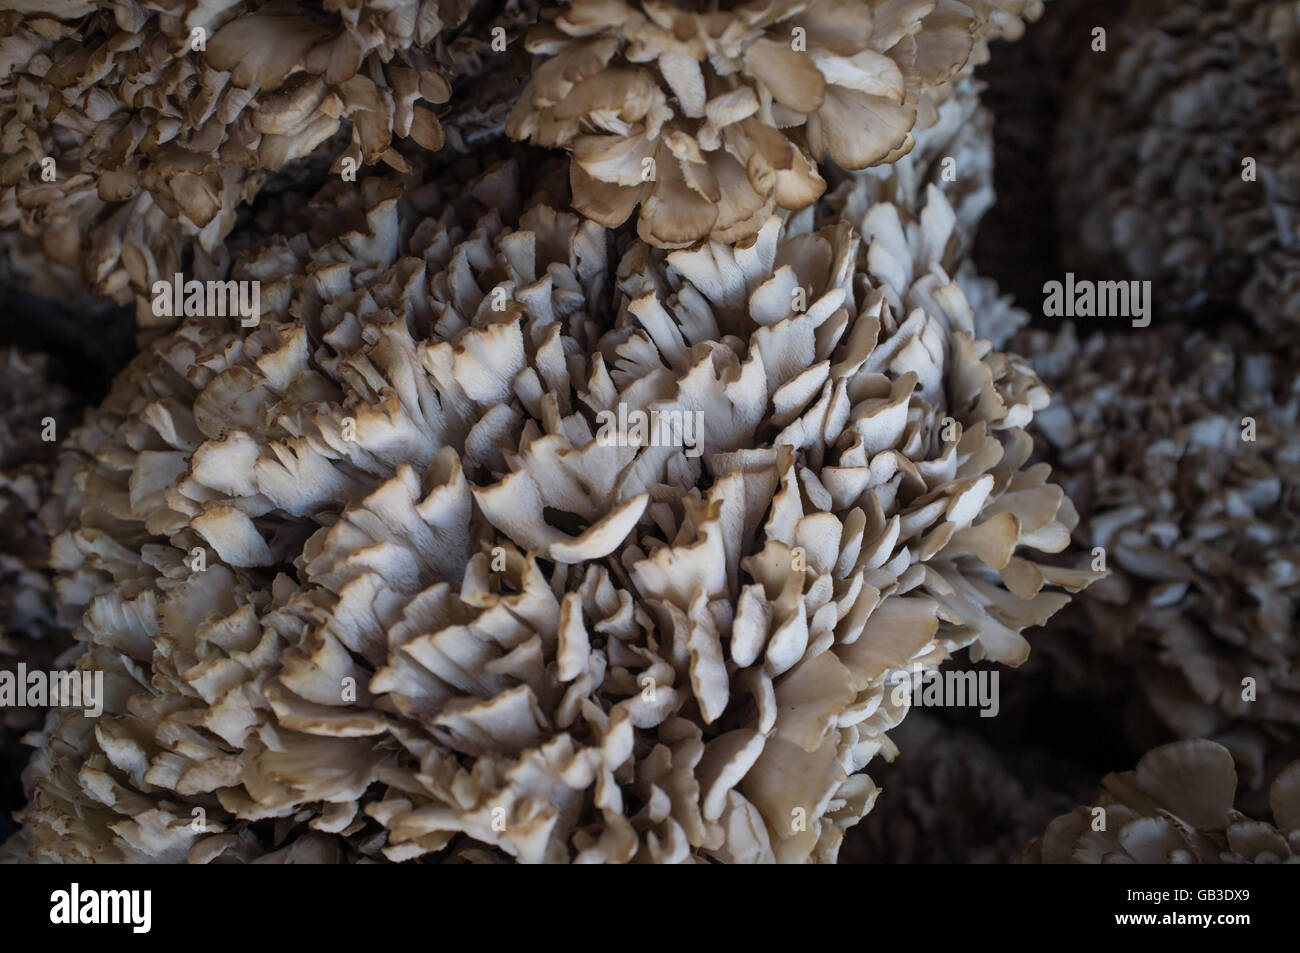 Closeup pile of gourmet cauliflower mushrooms at local farmers market Stock Photo